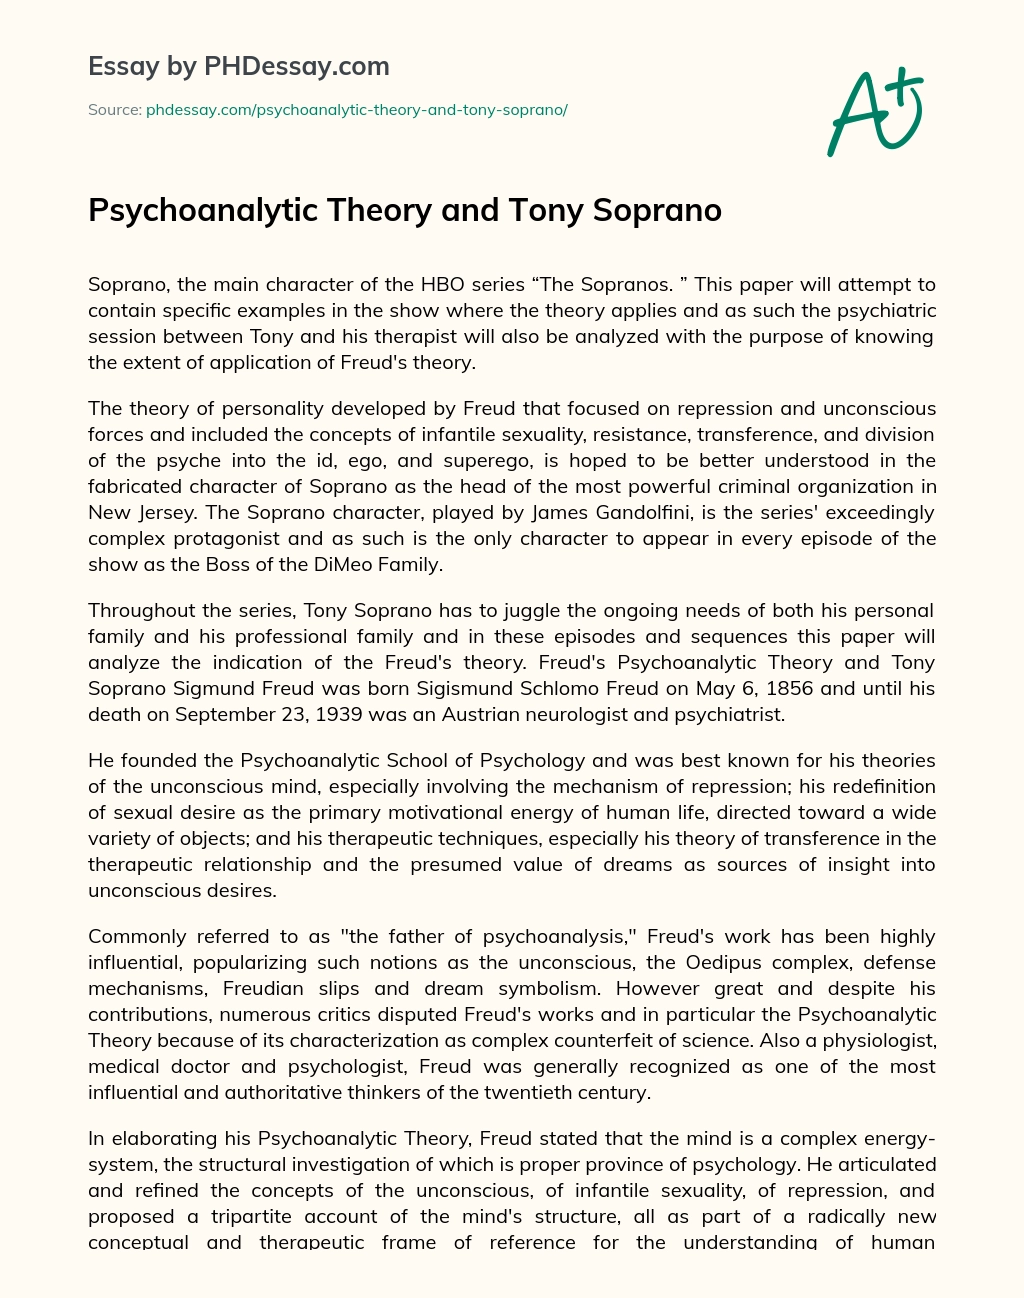 Psychoanalytic Theory and Tony Soprano essay